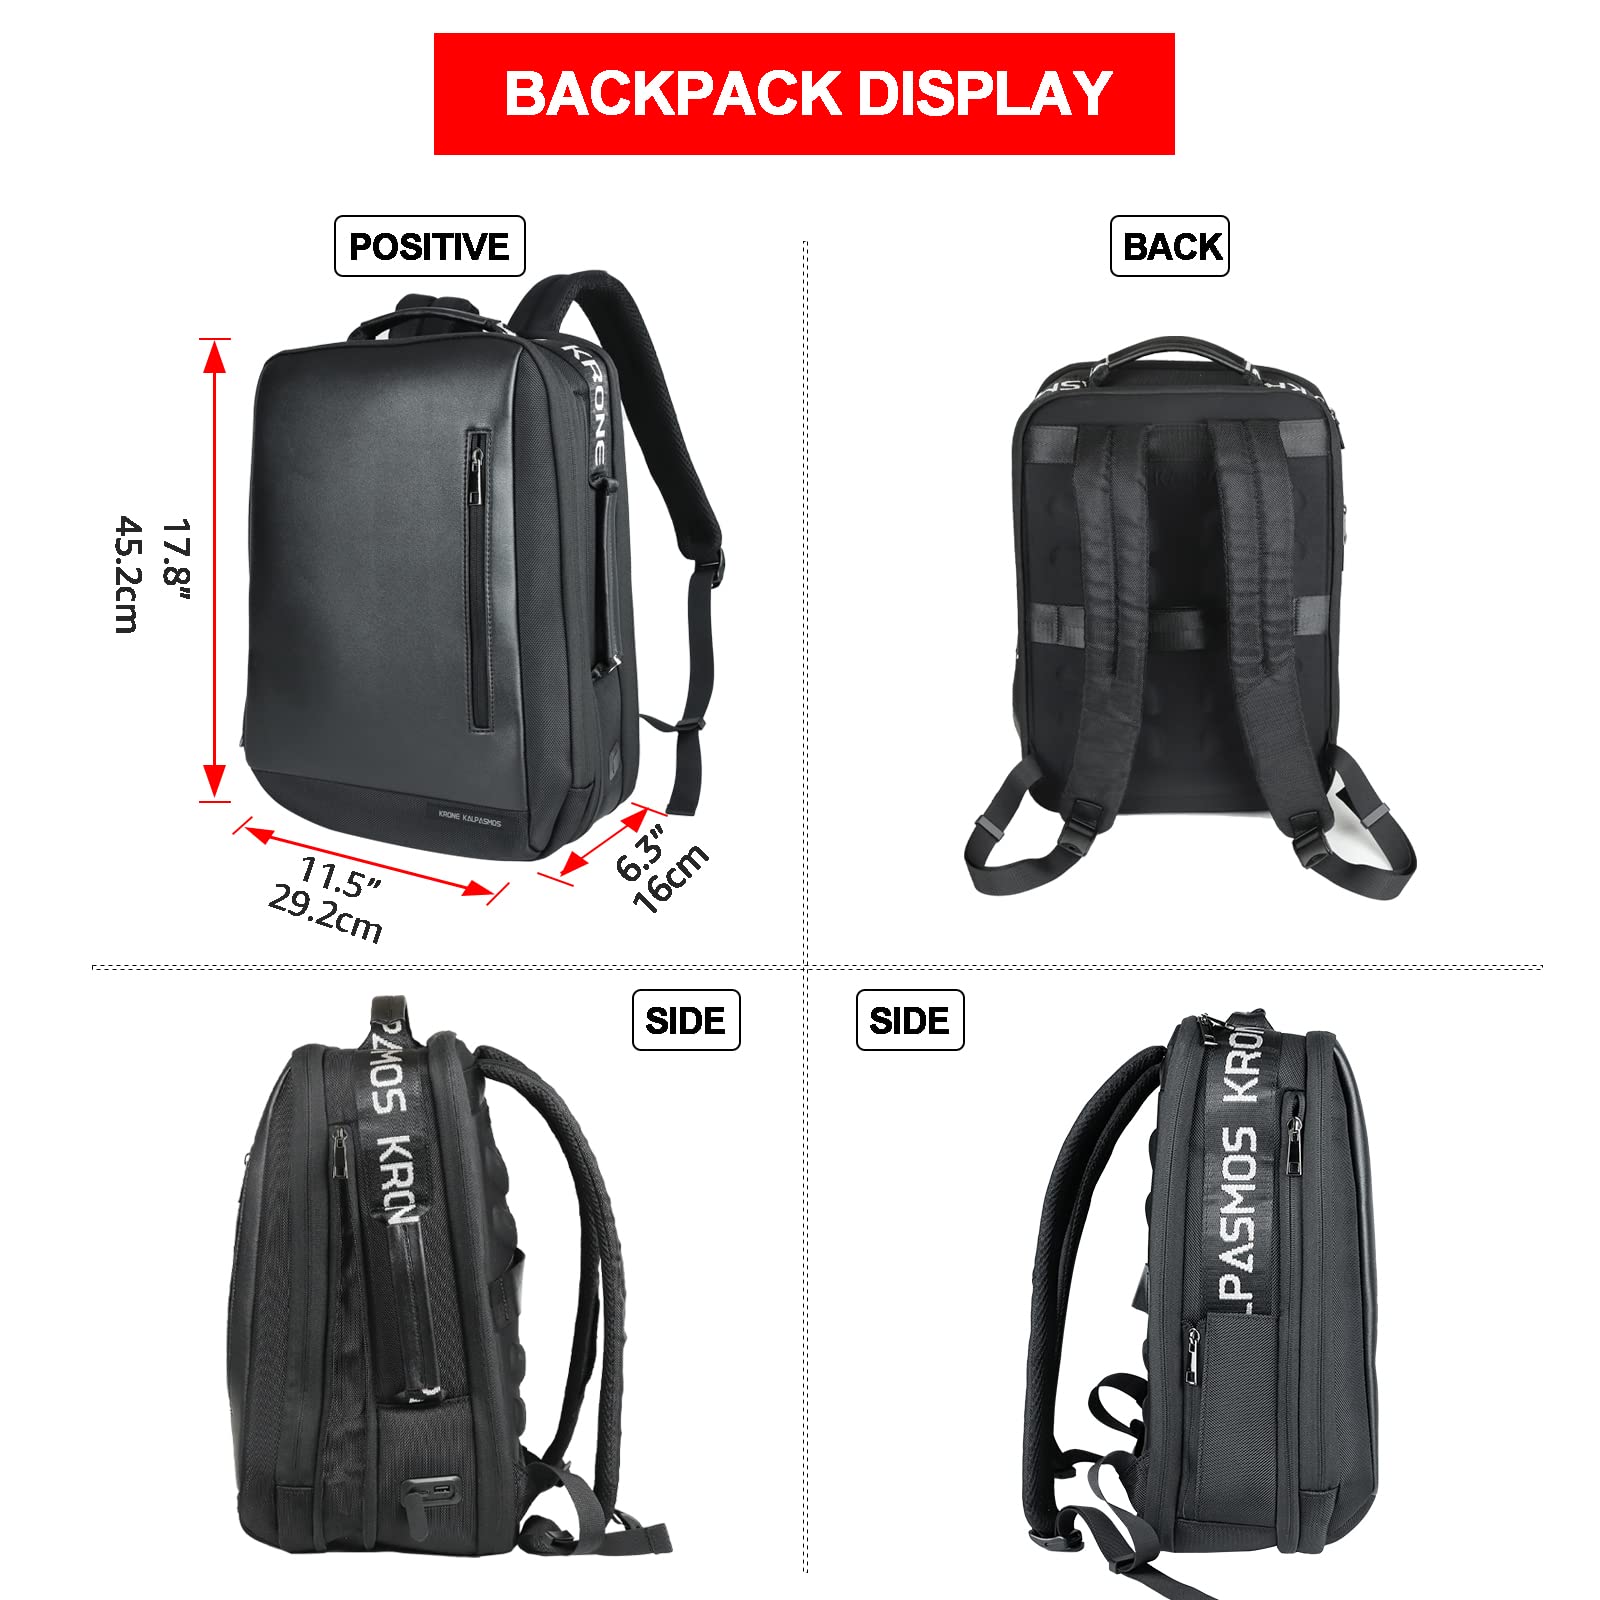 Krone Kalpasmos Backpack, Large Capacity Leather Waterproof Backpack with Black Organizer, Black